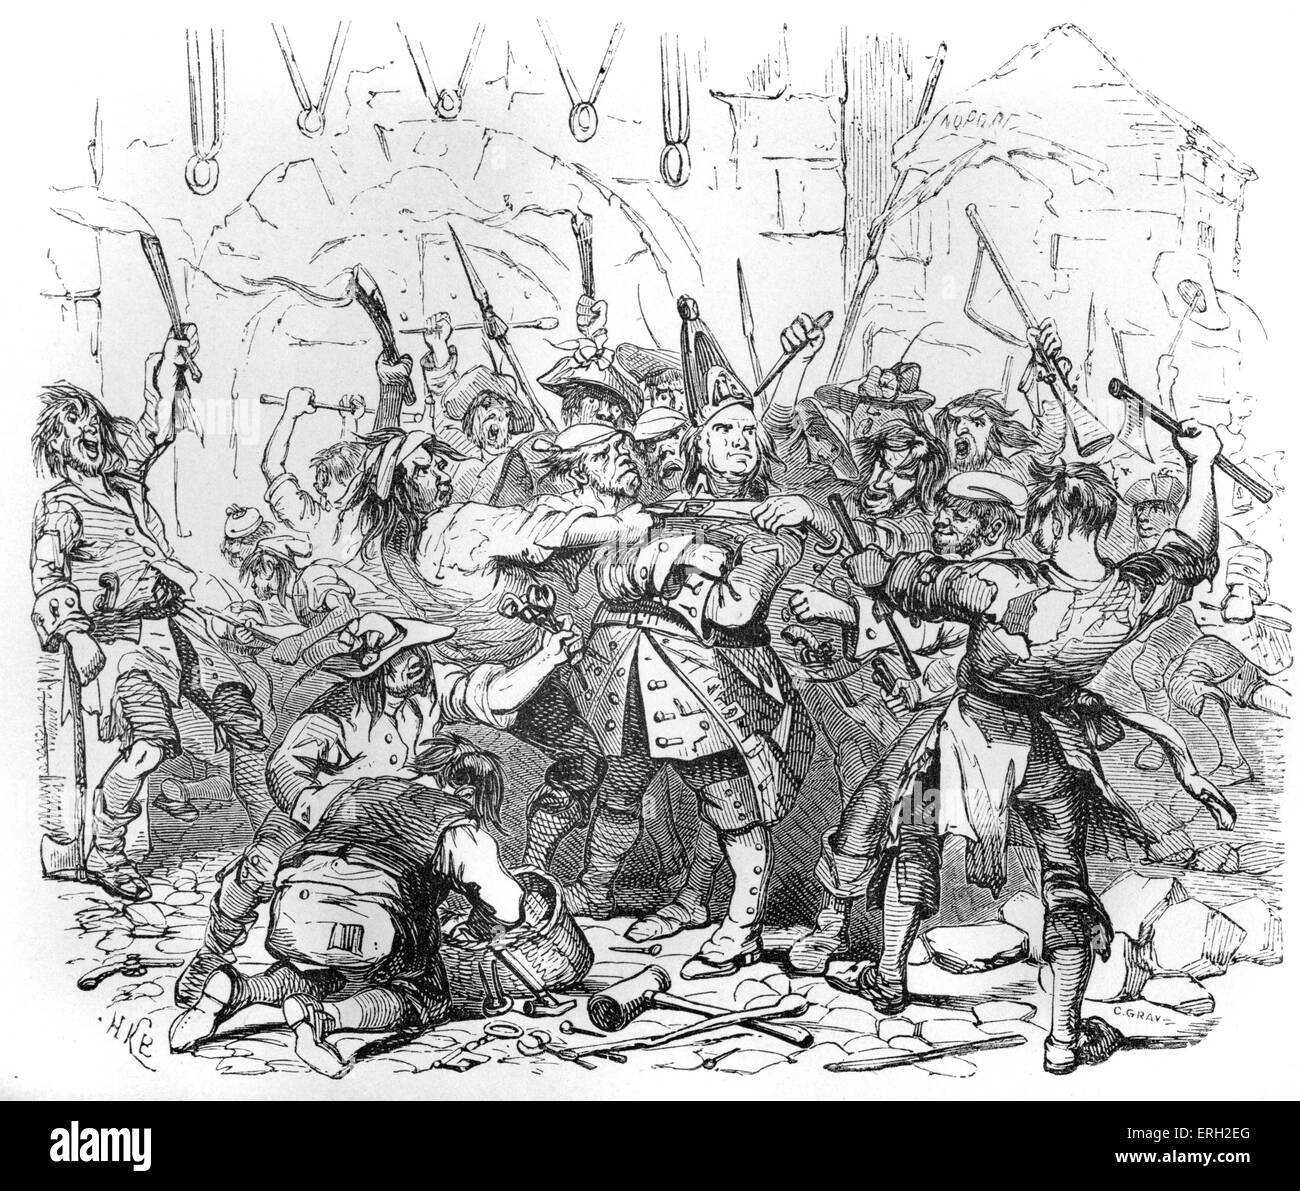 Charles Dickens "Barnaby Rudge". Bildunterschrift lautet: "Der Schlosser am Gefängnis-Tor".  Illustration von Phiz (H K Browne). Stockfoto